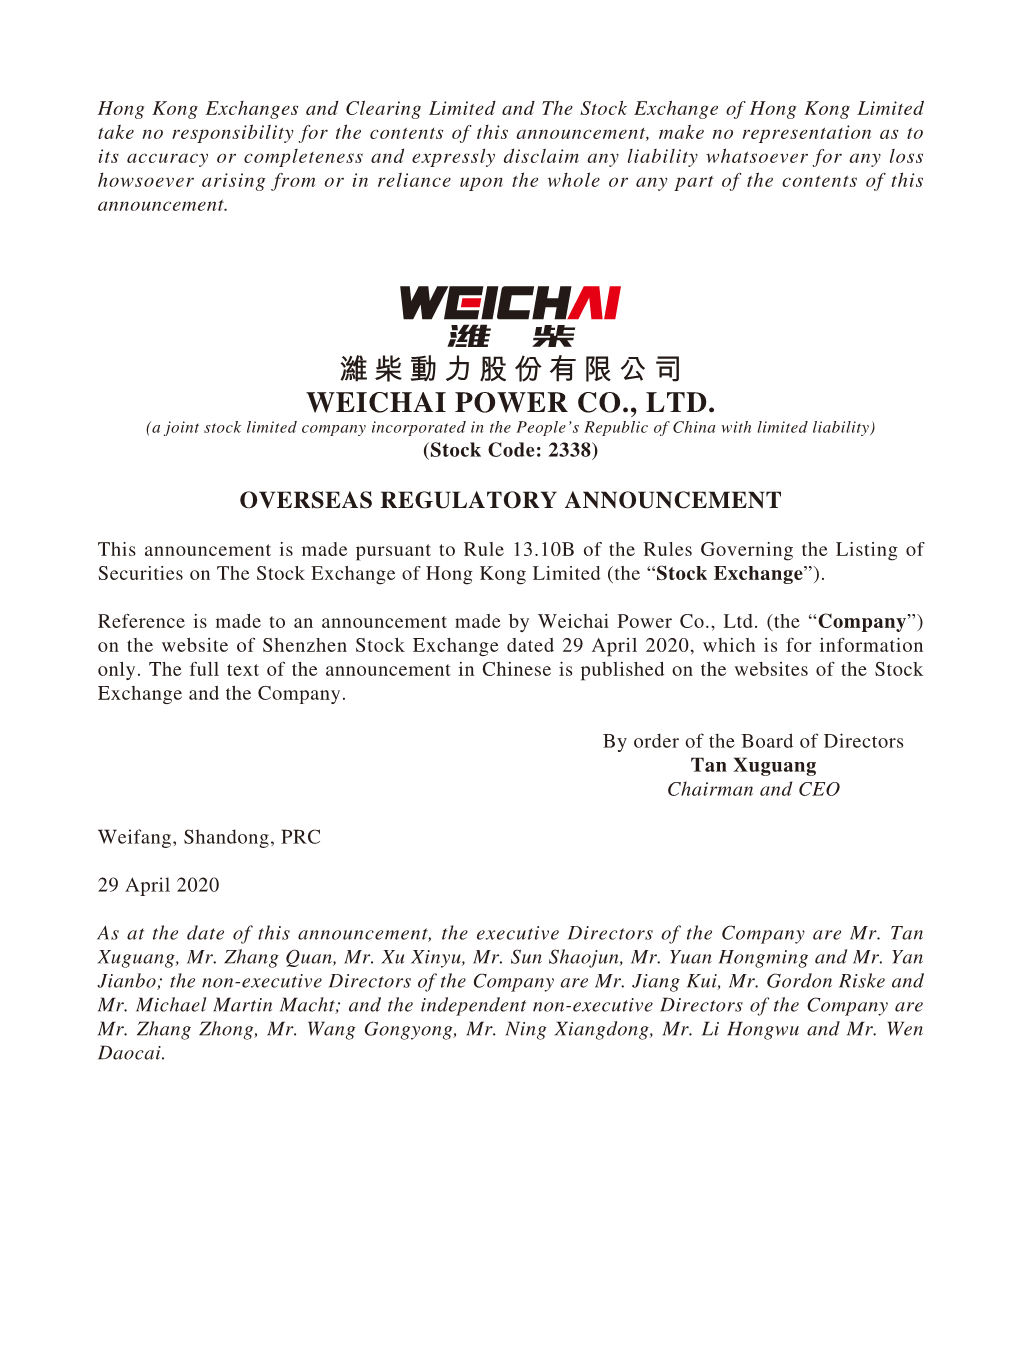 濰柴動力股份有限公司 WEICHAI POWER CO., LTD. (A Joint Stock Limited Company Incorporated in the People’S Republic of China with Limited Liability) (Stock Code: 2338)